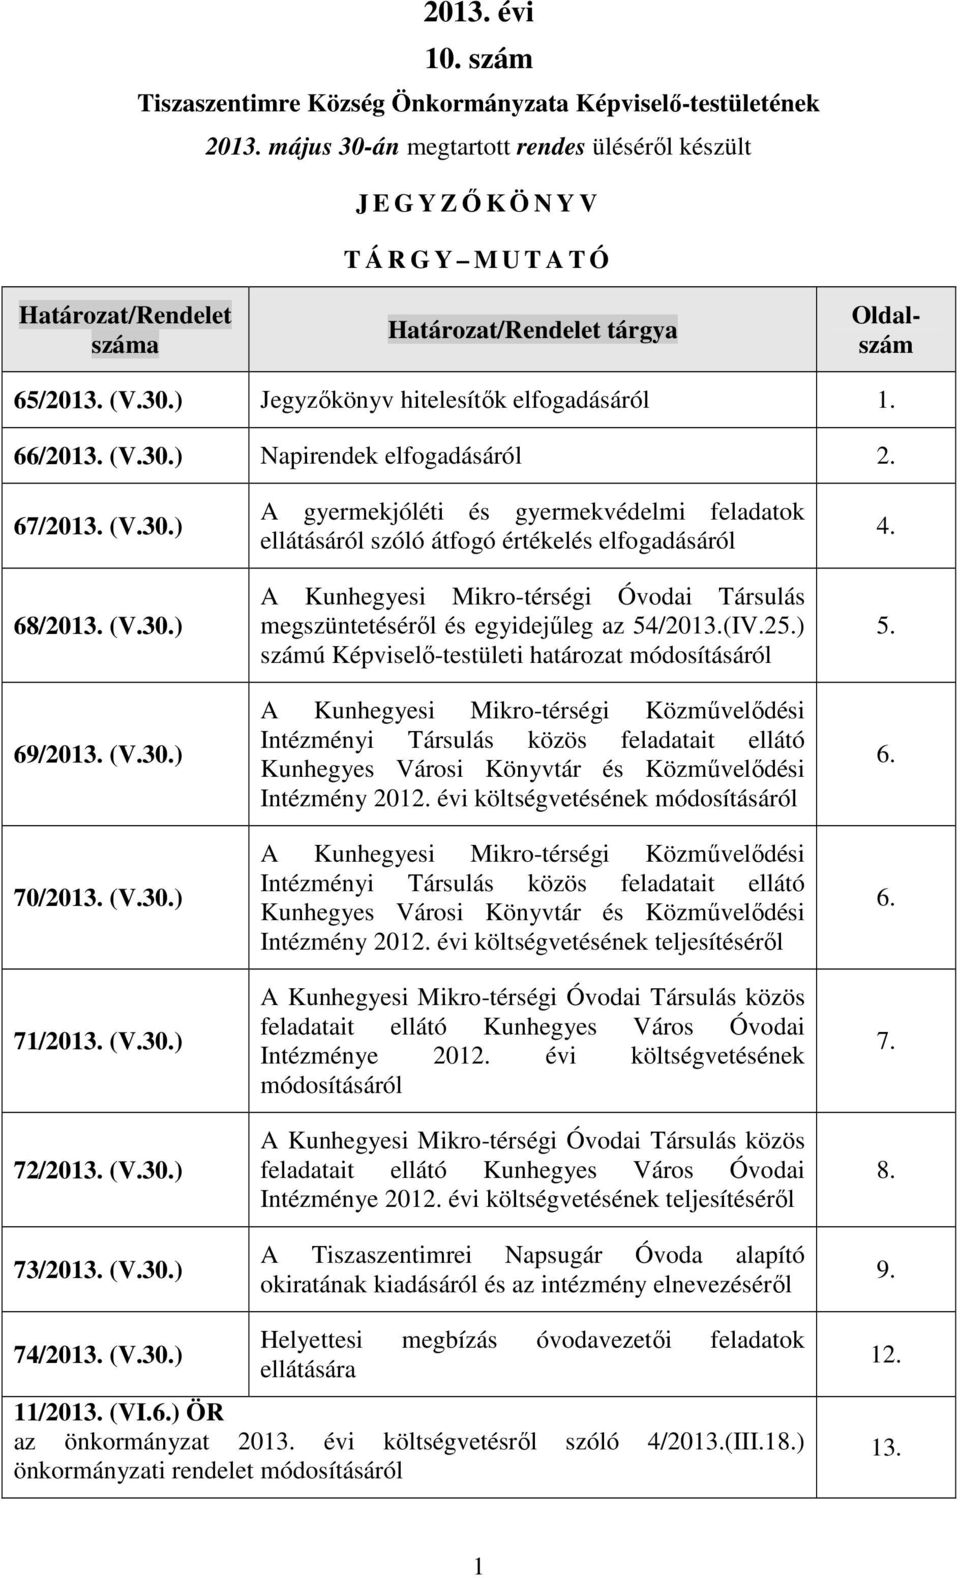 66/2013. (V.30.) Napirendek elfogadásáról 2. 67/2013. (V.30.) 68/2013. (V.30.) 69/2013. (V.30.) 70/2013. (V.30.) 71/2013. (V.30.) 72/2013. (V.30.) 73/2013. (V.30.) A gyermekjóléti és gyermekvédelmi feladatok ellátásáról szóló átfogó értékelés elfogadásáról A Kunhegyesi Mikro-térségi Óvodai Társulás megszüntetésérıl és egyidejőleg az 54/2013.